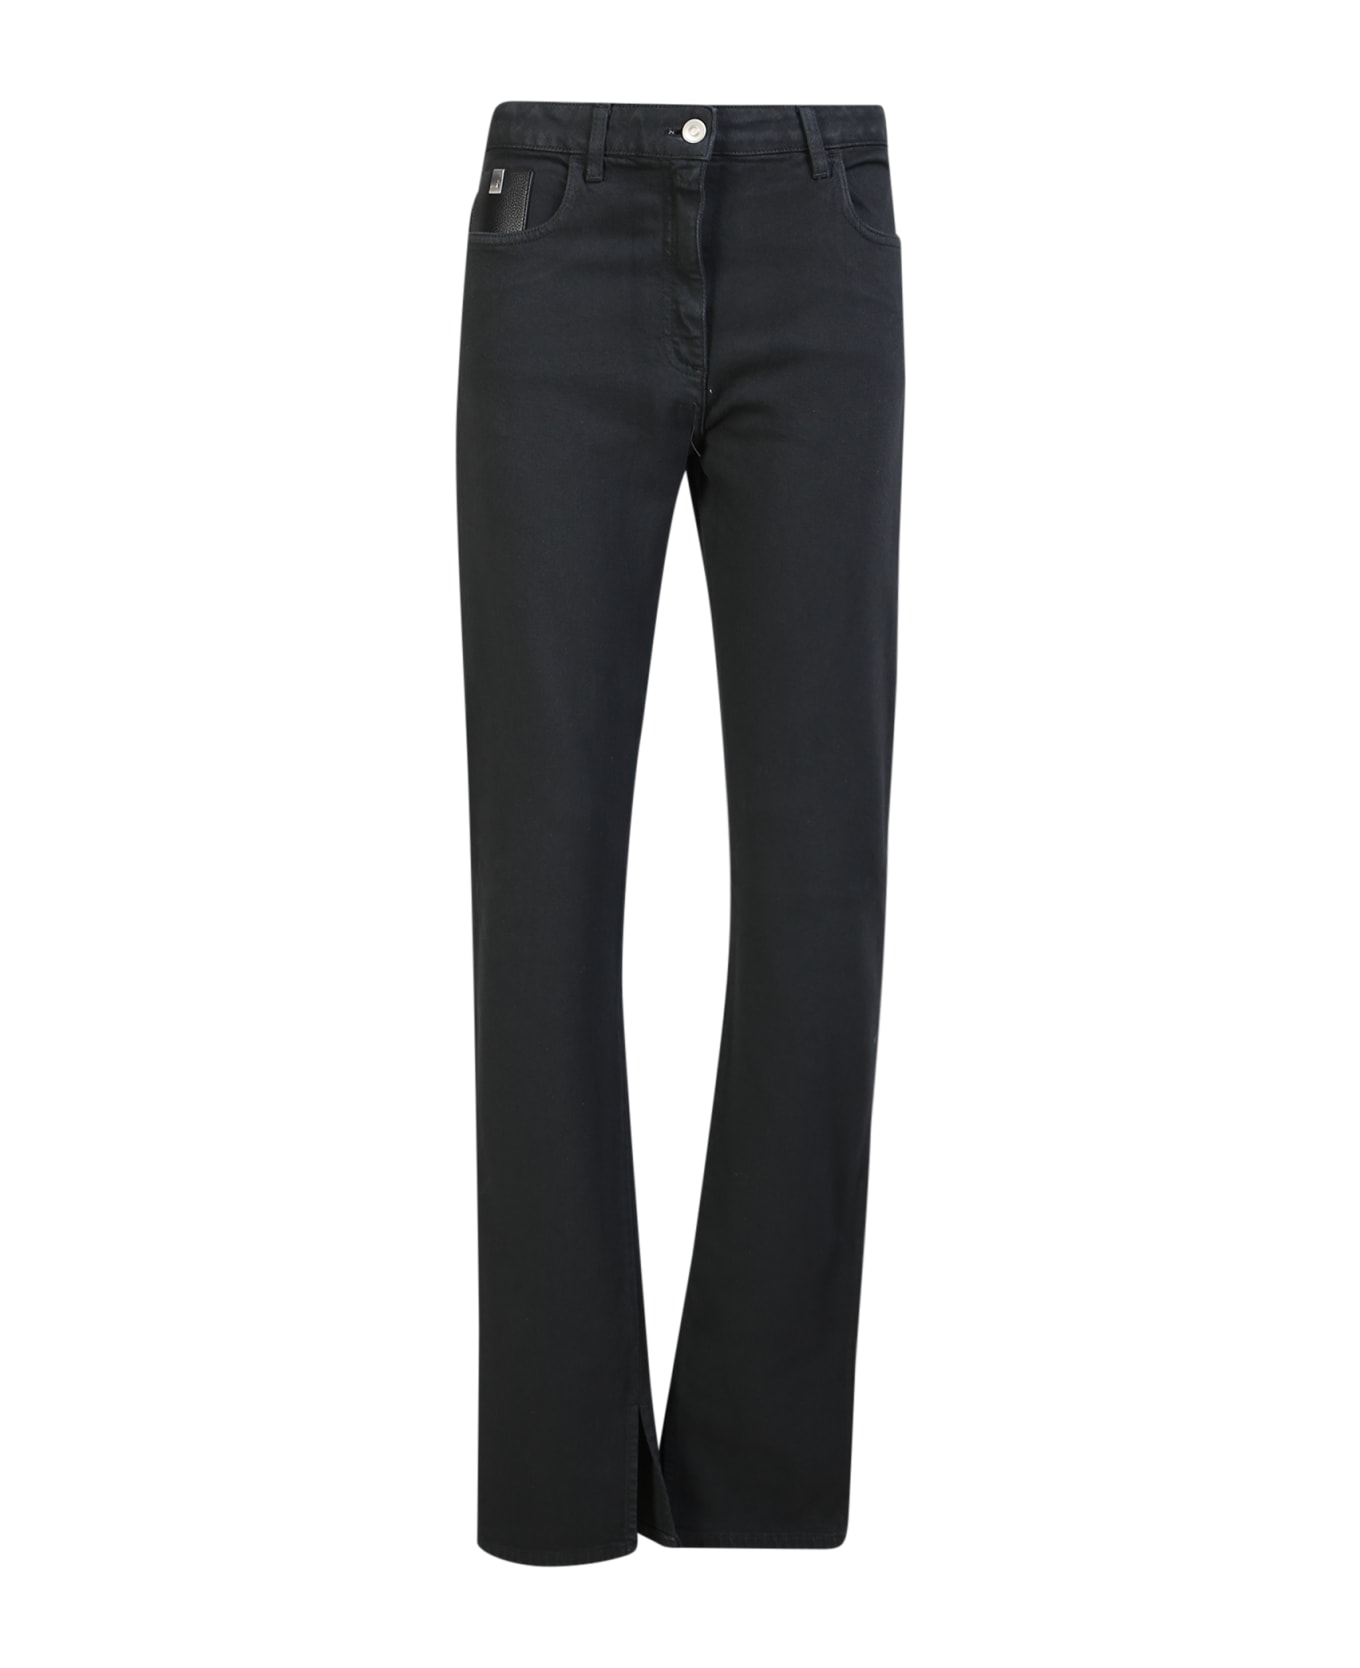 1017 ALYX 9SM High-waisted Skinny Jeans Black - Black